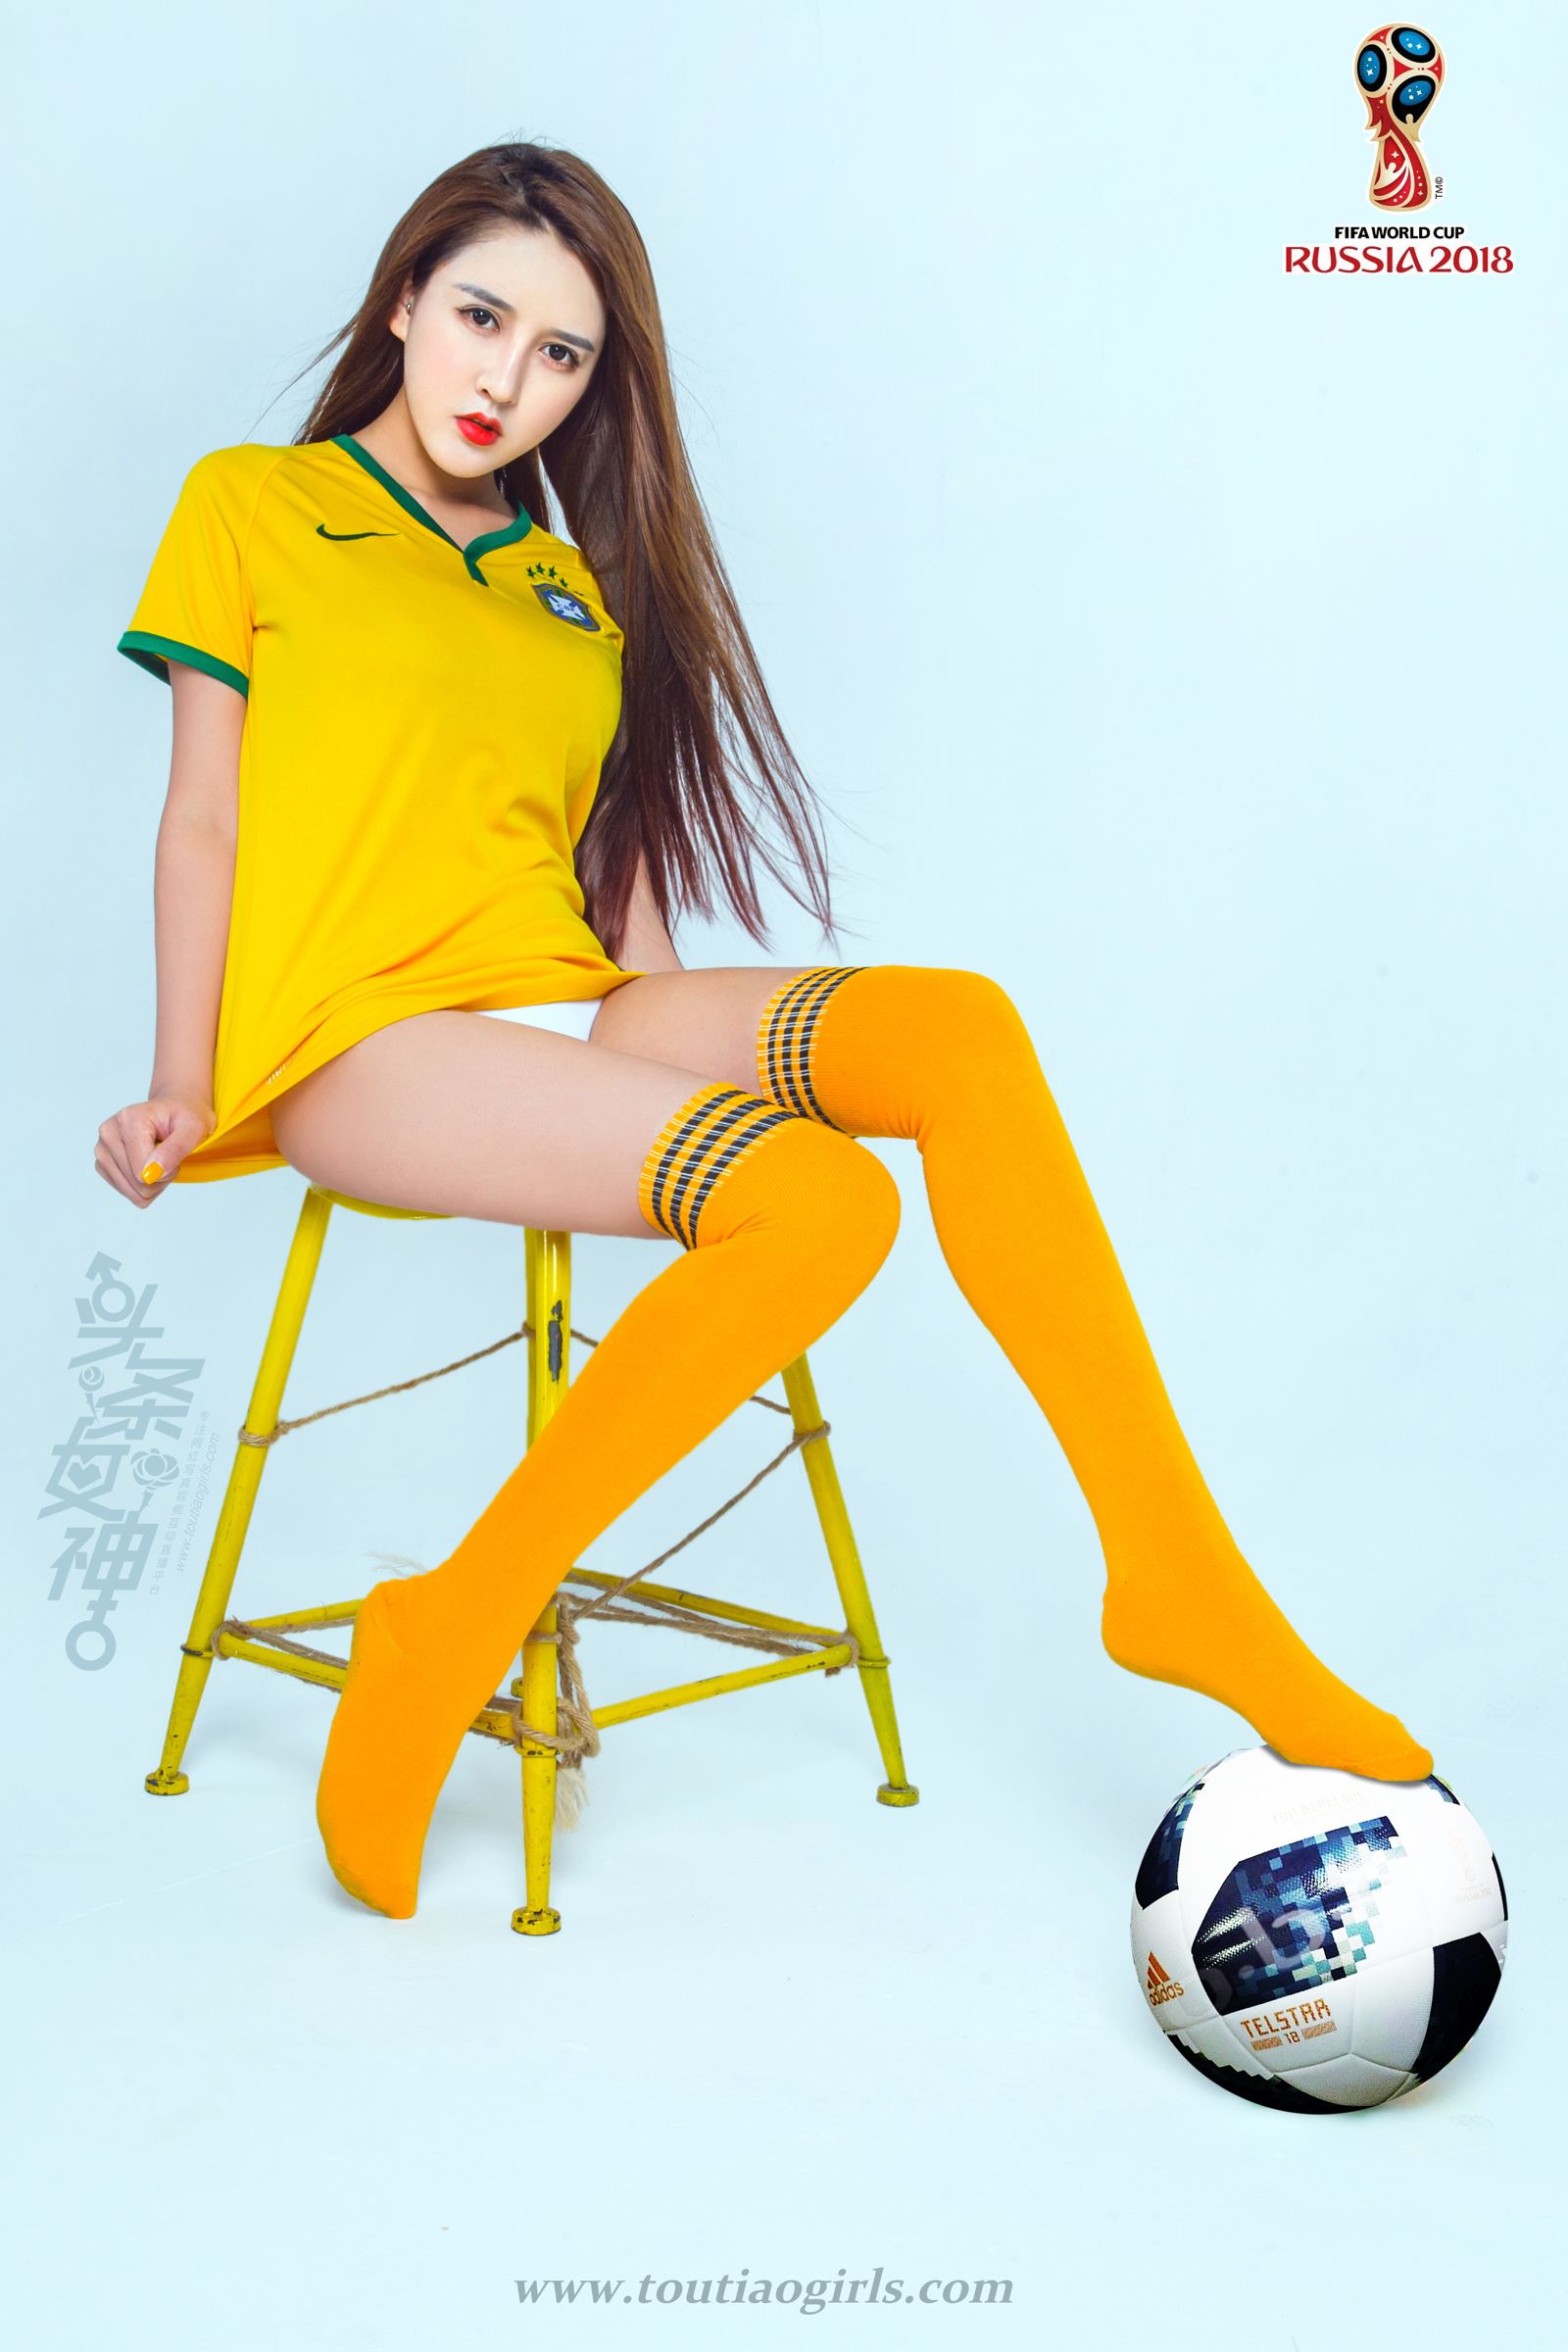 TouTiao Girls World Cup! Brazil Team